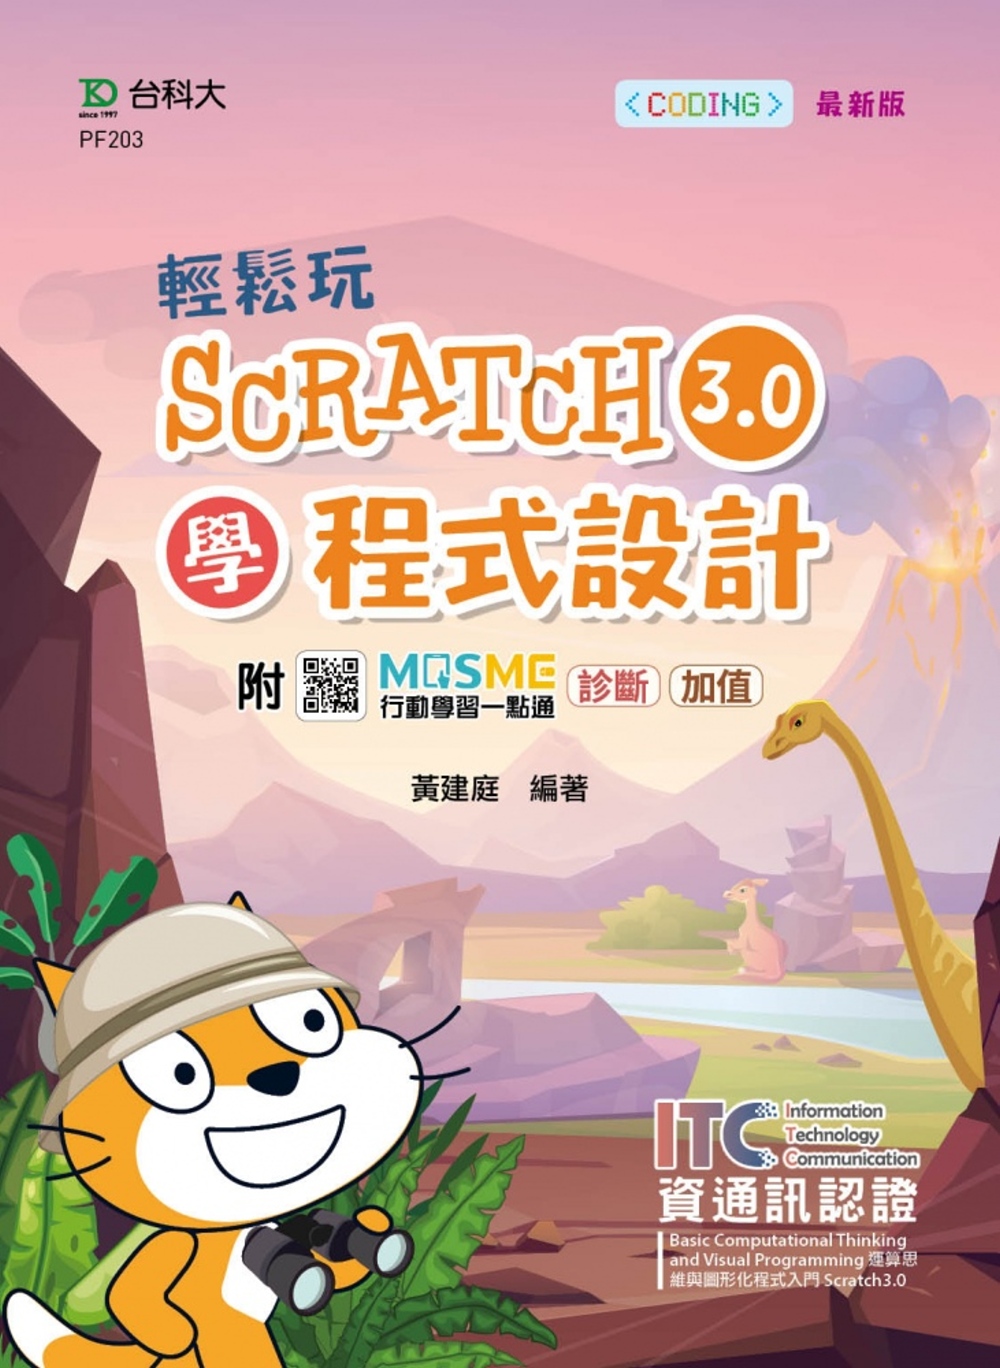 輕鬆玩Scratch3.0學程式設計 - 含ITC資通訊認證Basic Computational Thinking and Visual Programming運算思維與圖形化程式入門 Scratch3.0 - 最新版 - 附MOSME行